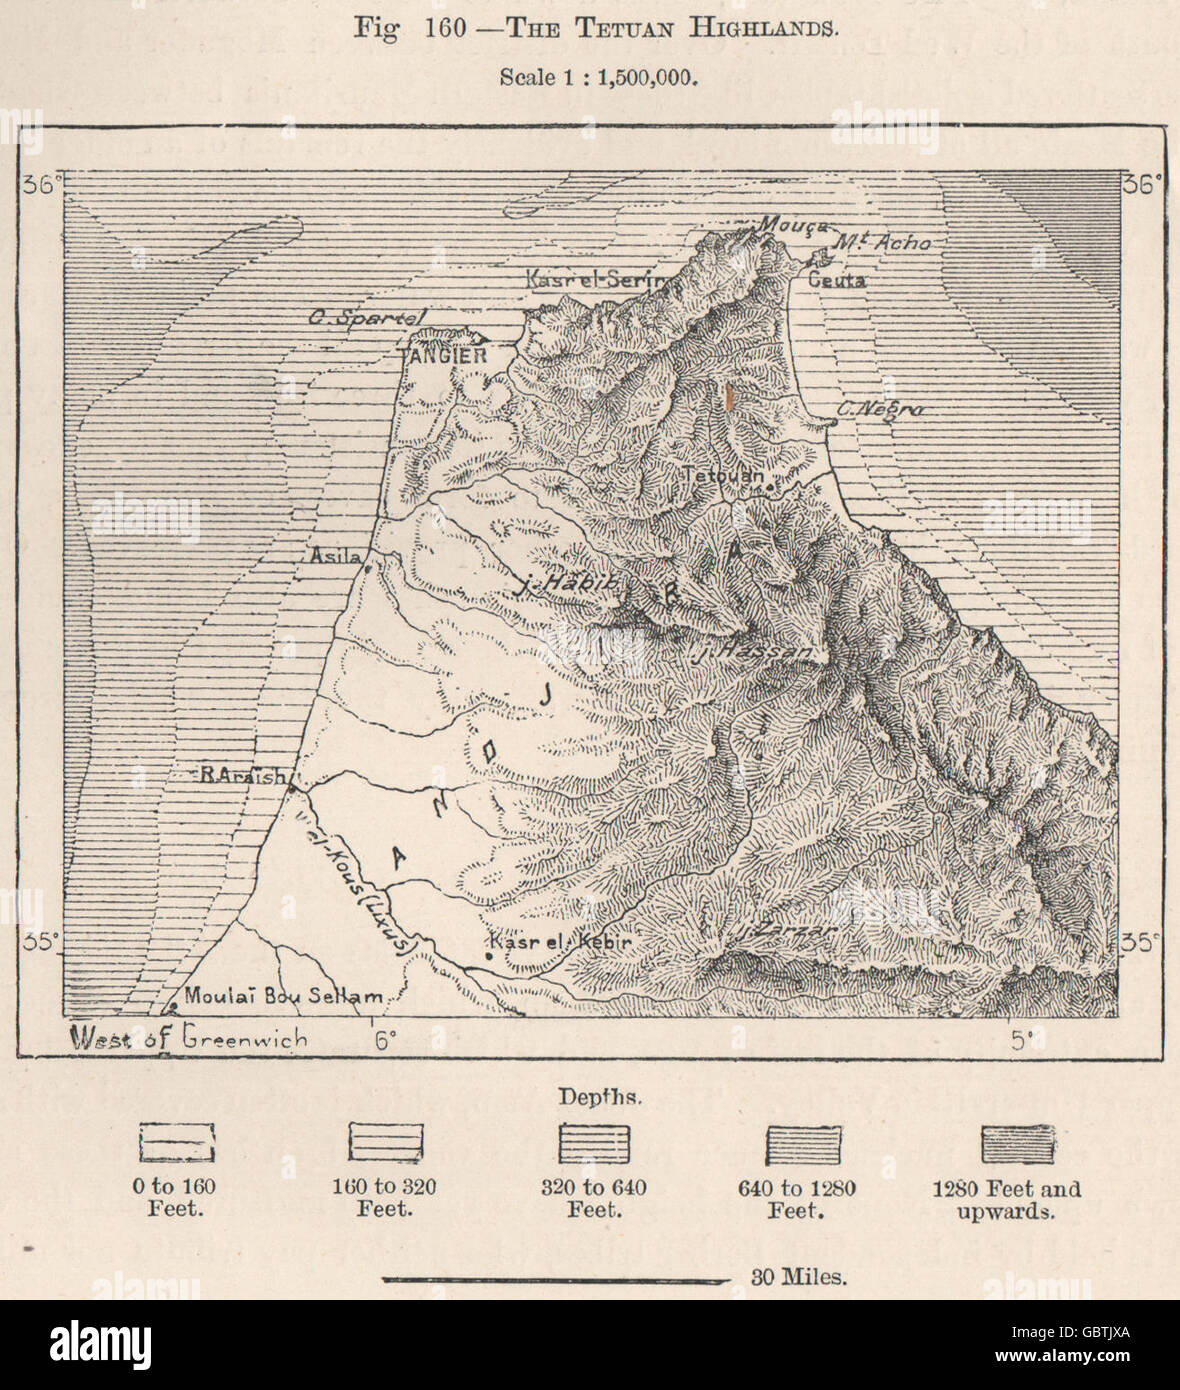 Les hautes terres de Tétouan. Montagnes du Rif. Maroc, 1885 carte antique Banque D'Images